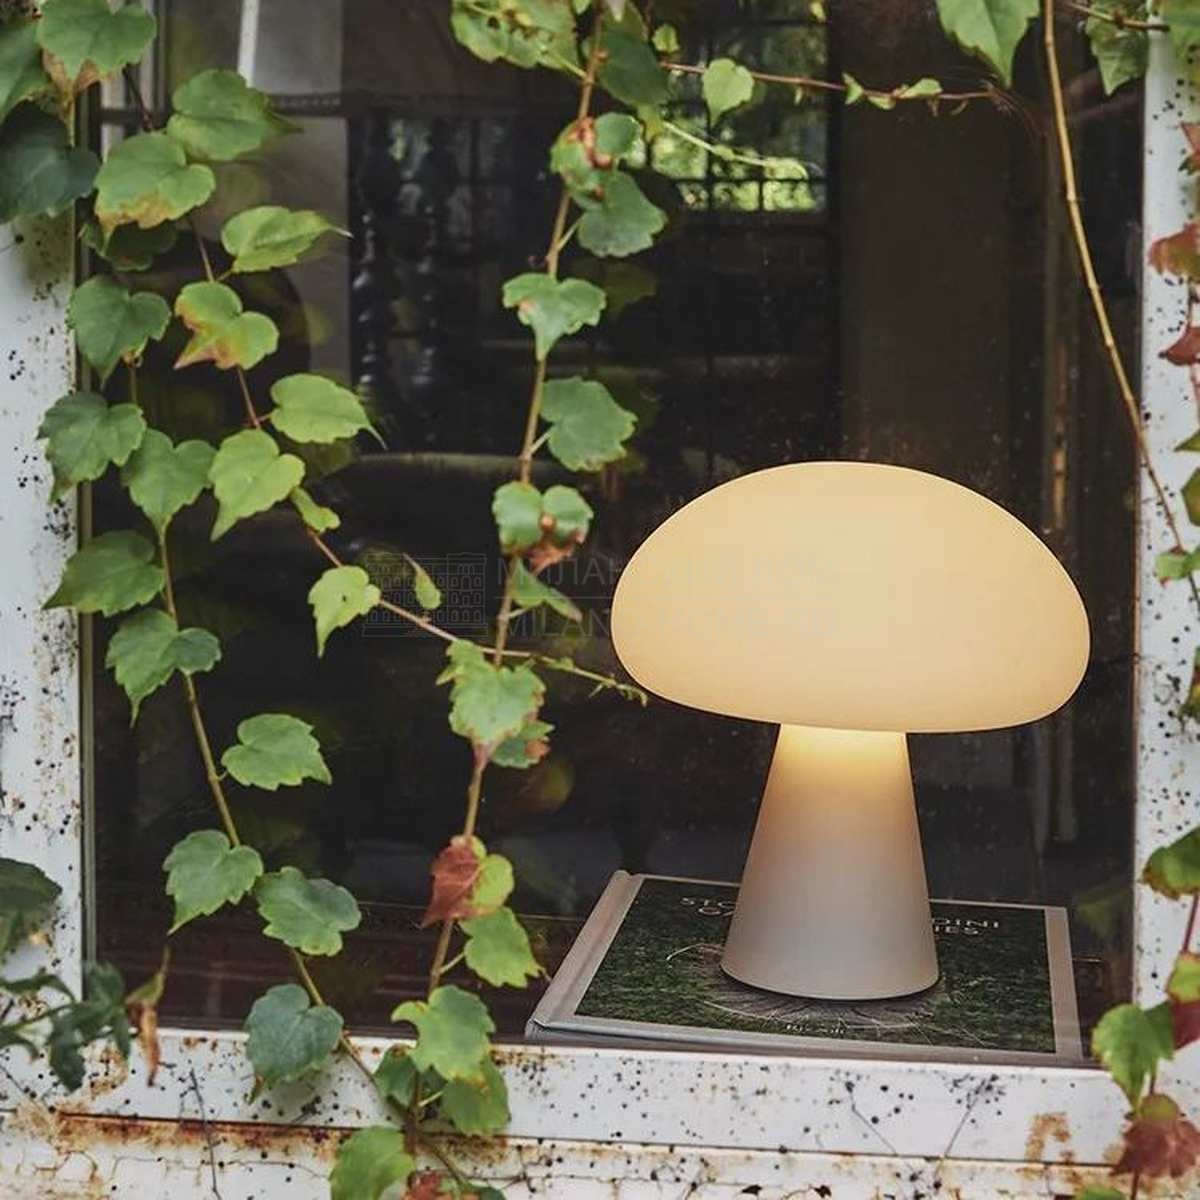 Настольная лампа Obello portable lamp из Дании фабрики GUBI